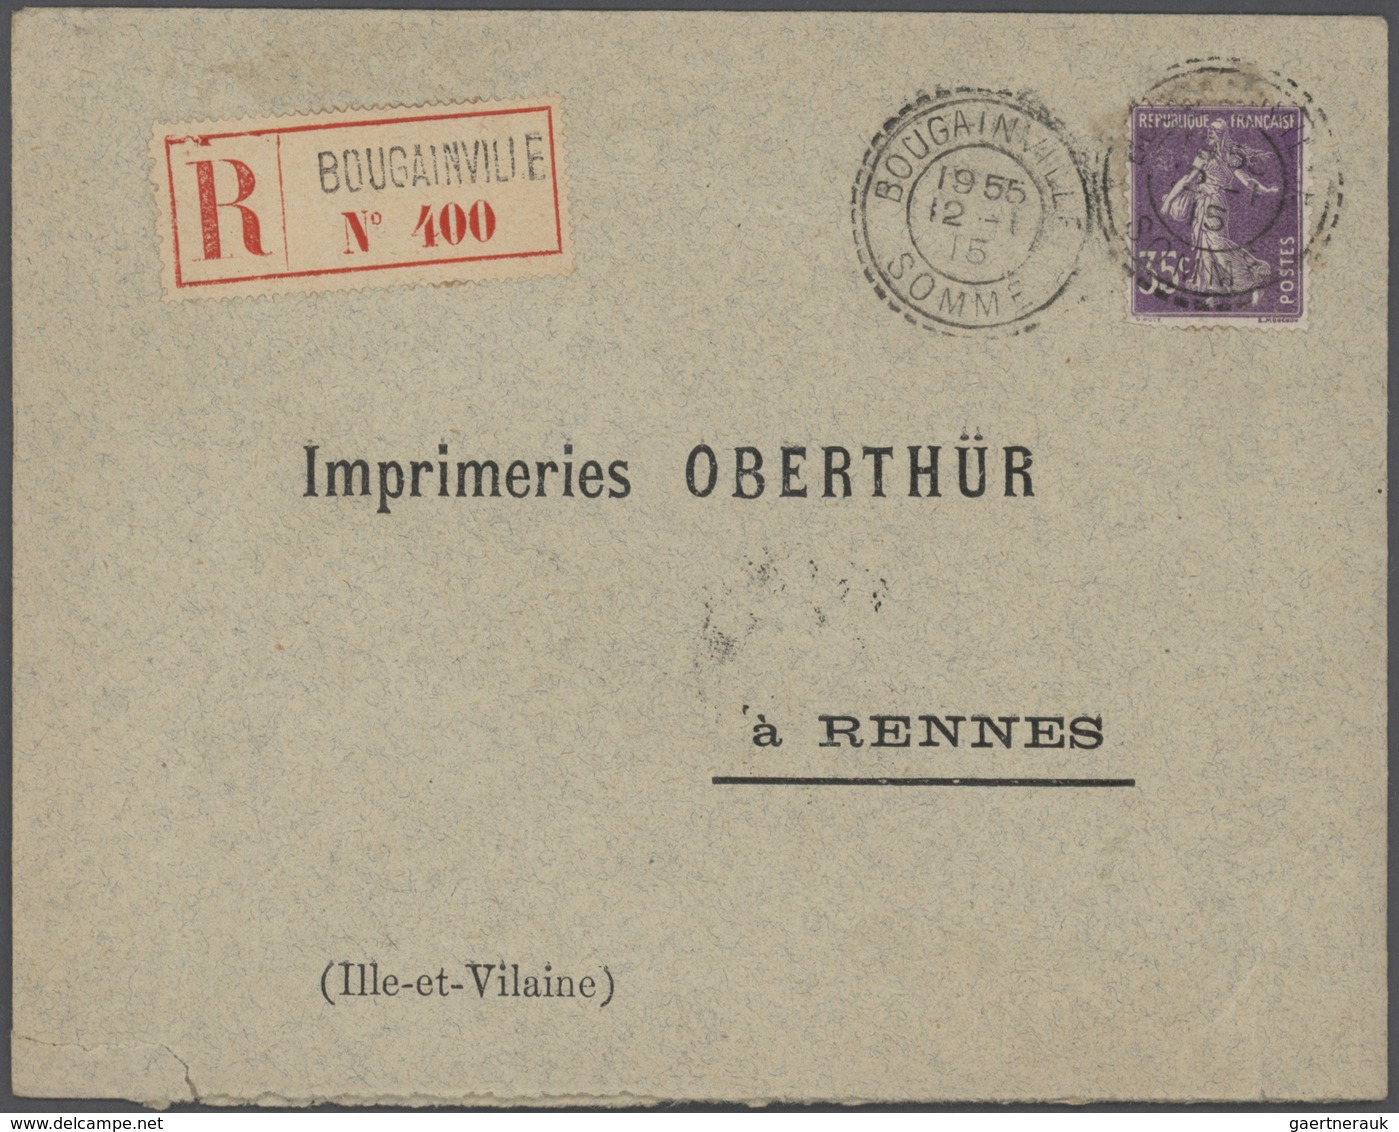 26428 Frankreich: 1910/50 (ca.), Sammlung von ca. 335 Einschreibe-Briefen, sehr spezialisiert mit vielen T